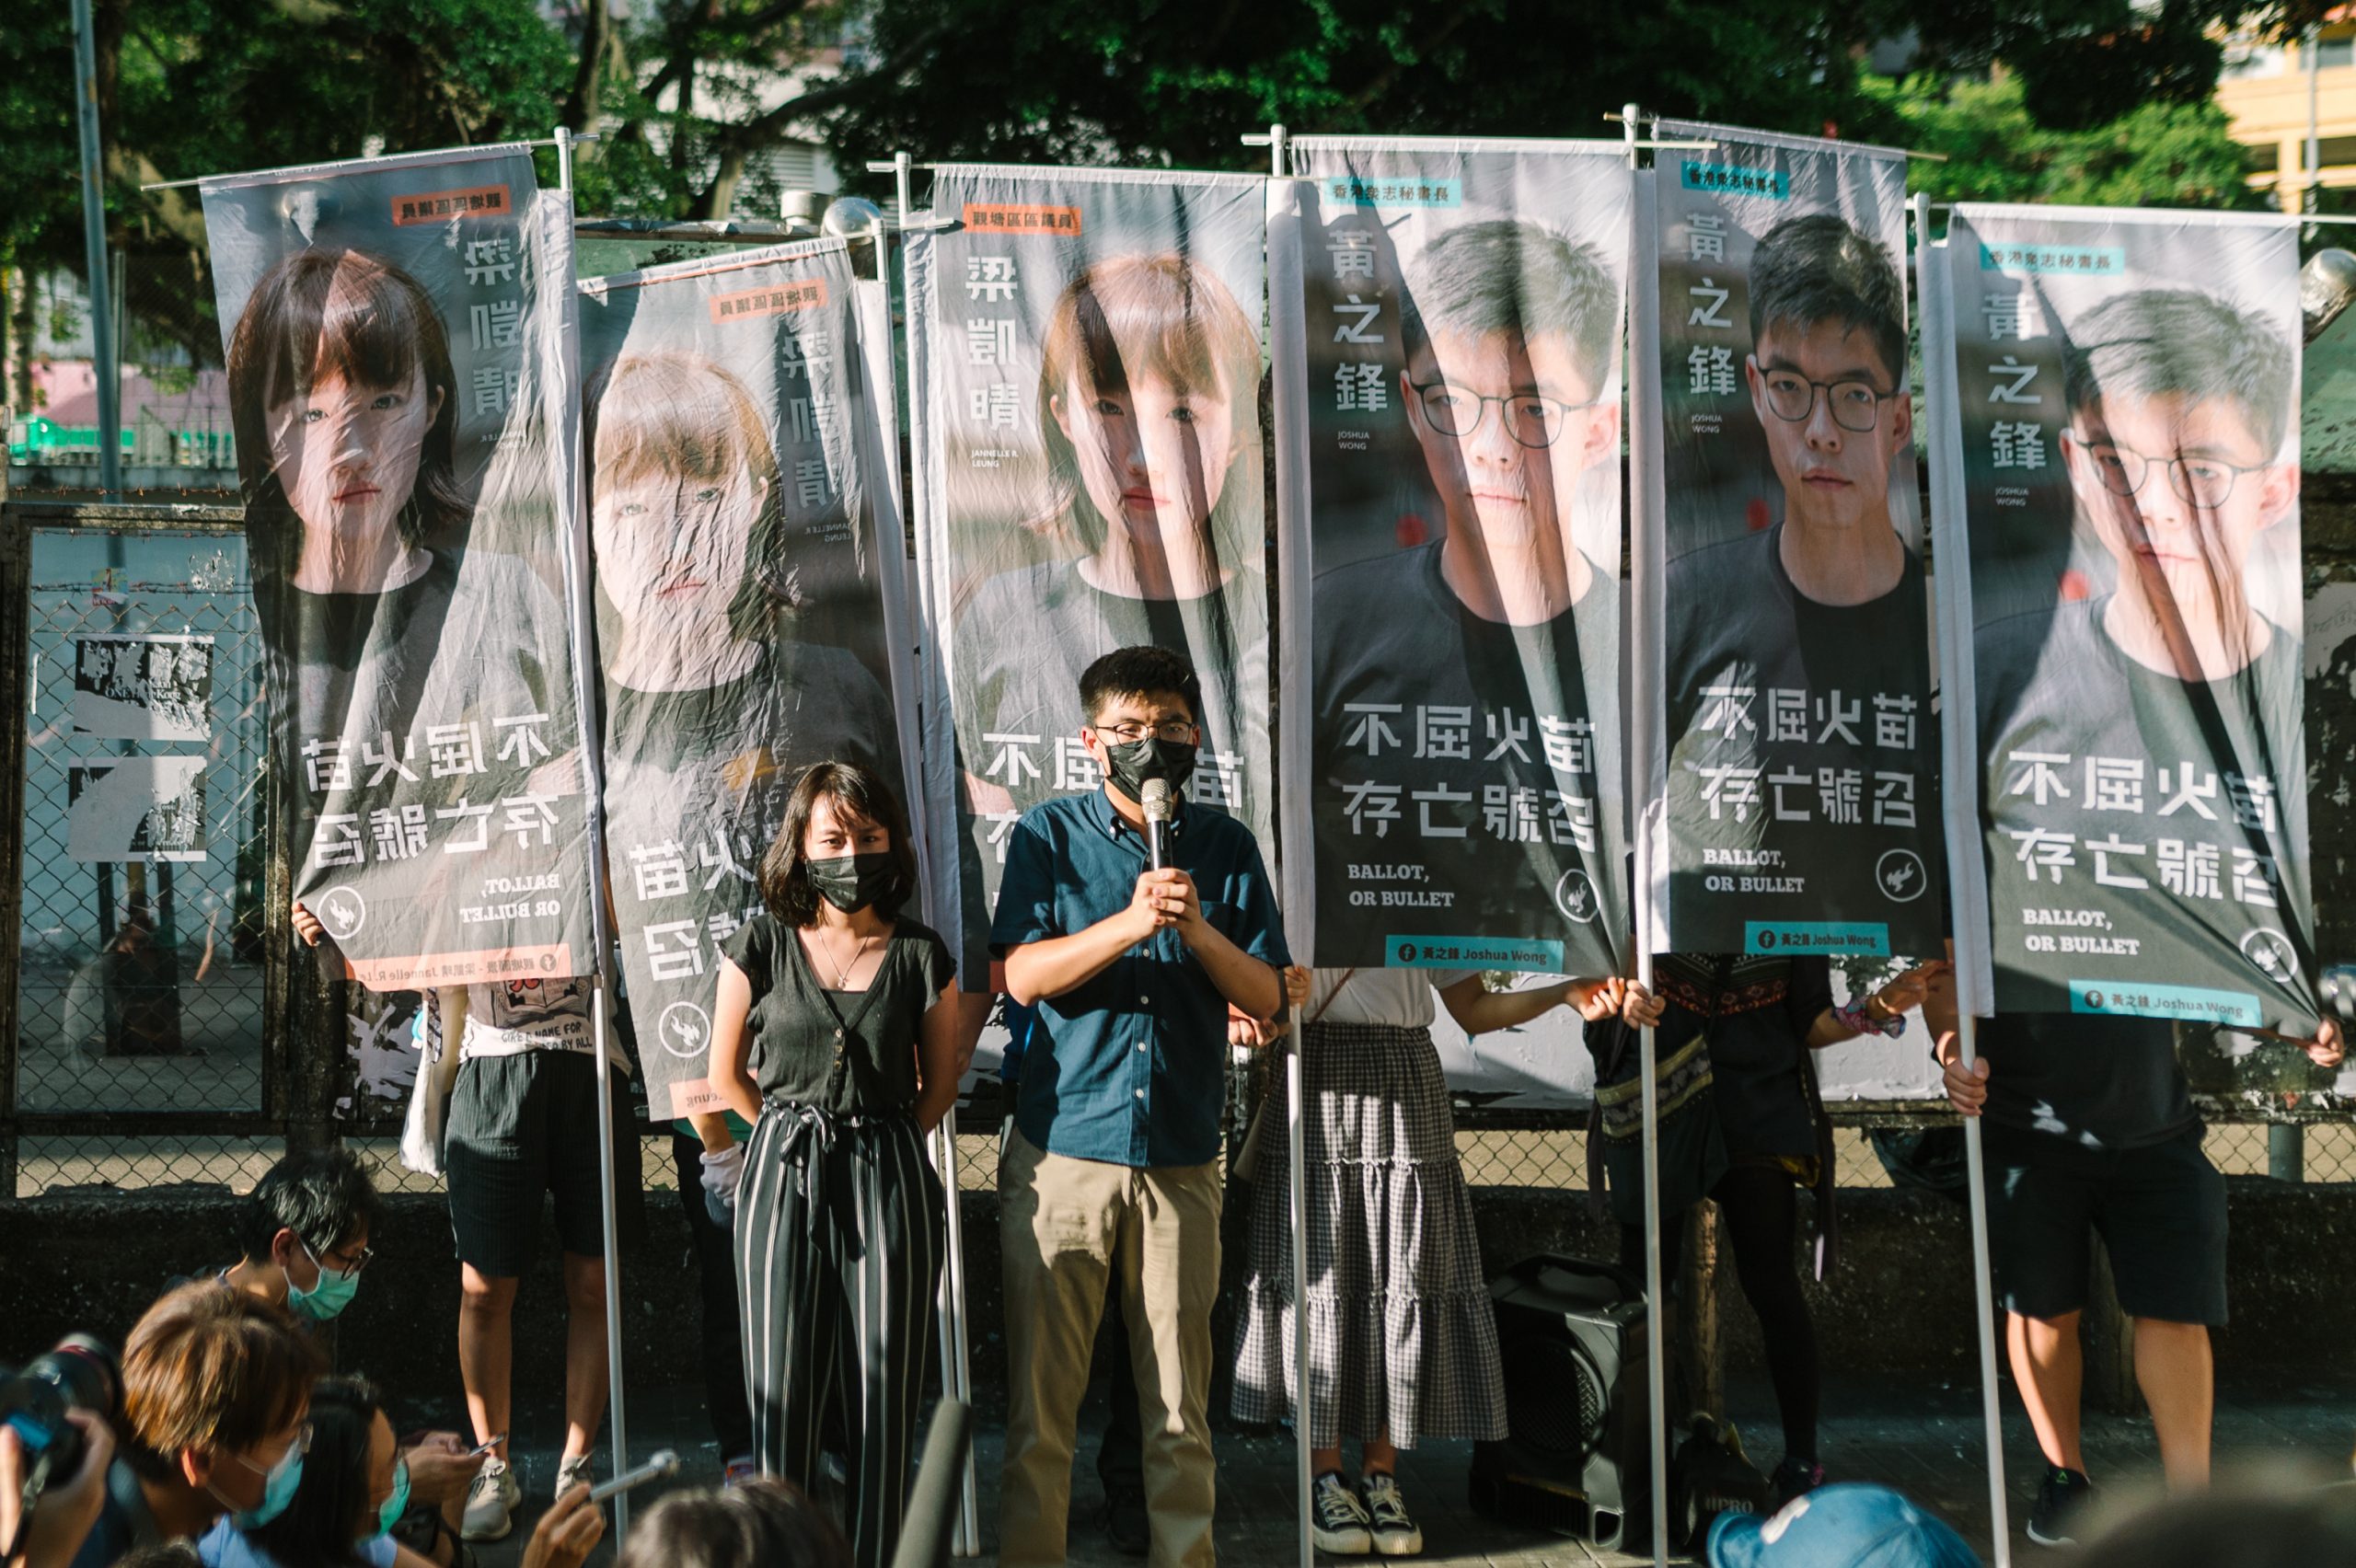 Hong Kong,China - June 19 2020: Joshua Wong announced to join the 2020 Hong Kong pro-democracy primaries in Kwun Tong MTR Station

